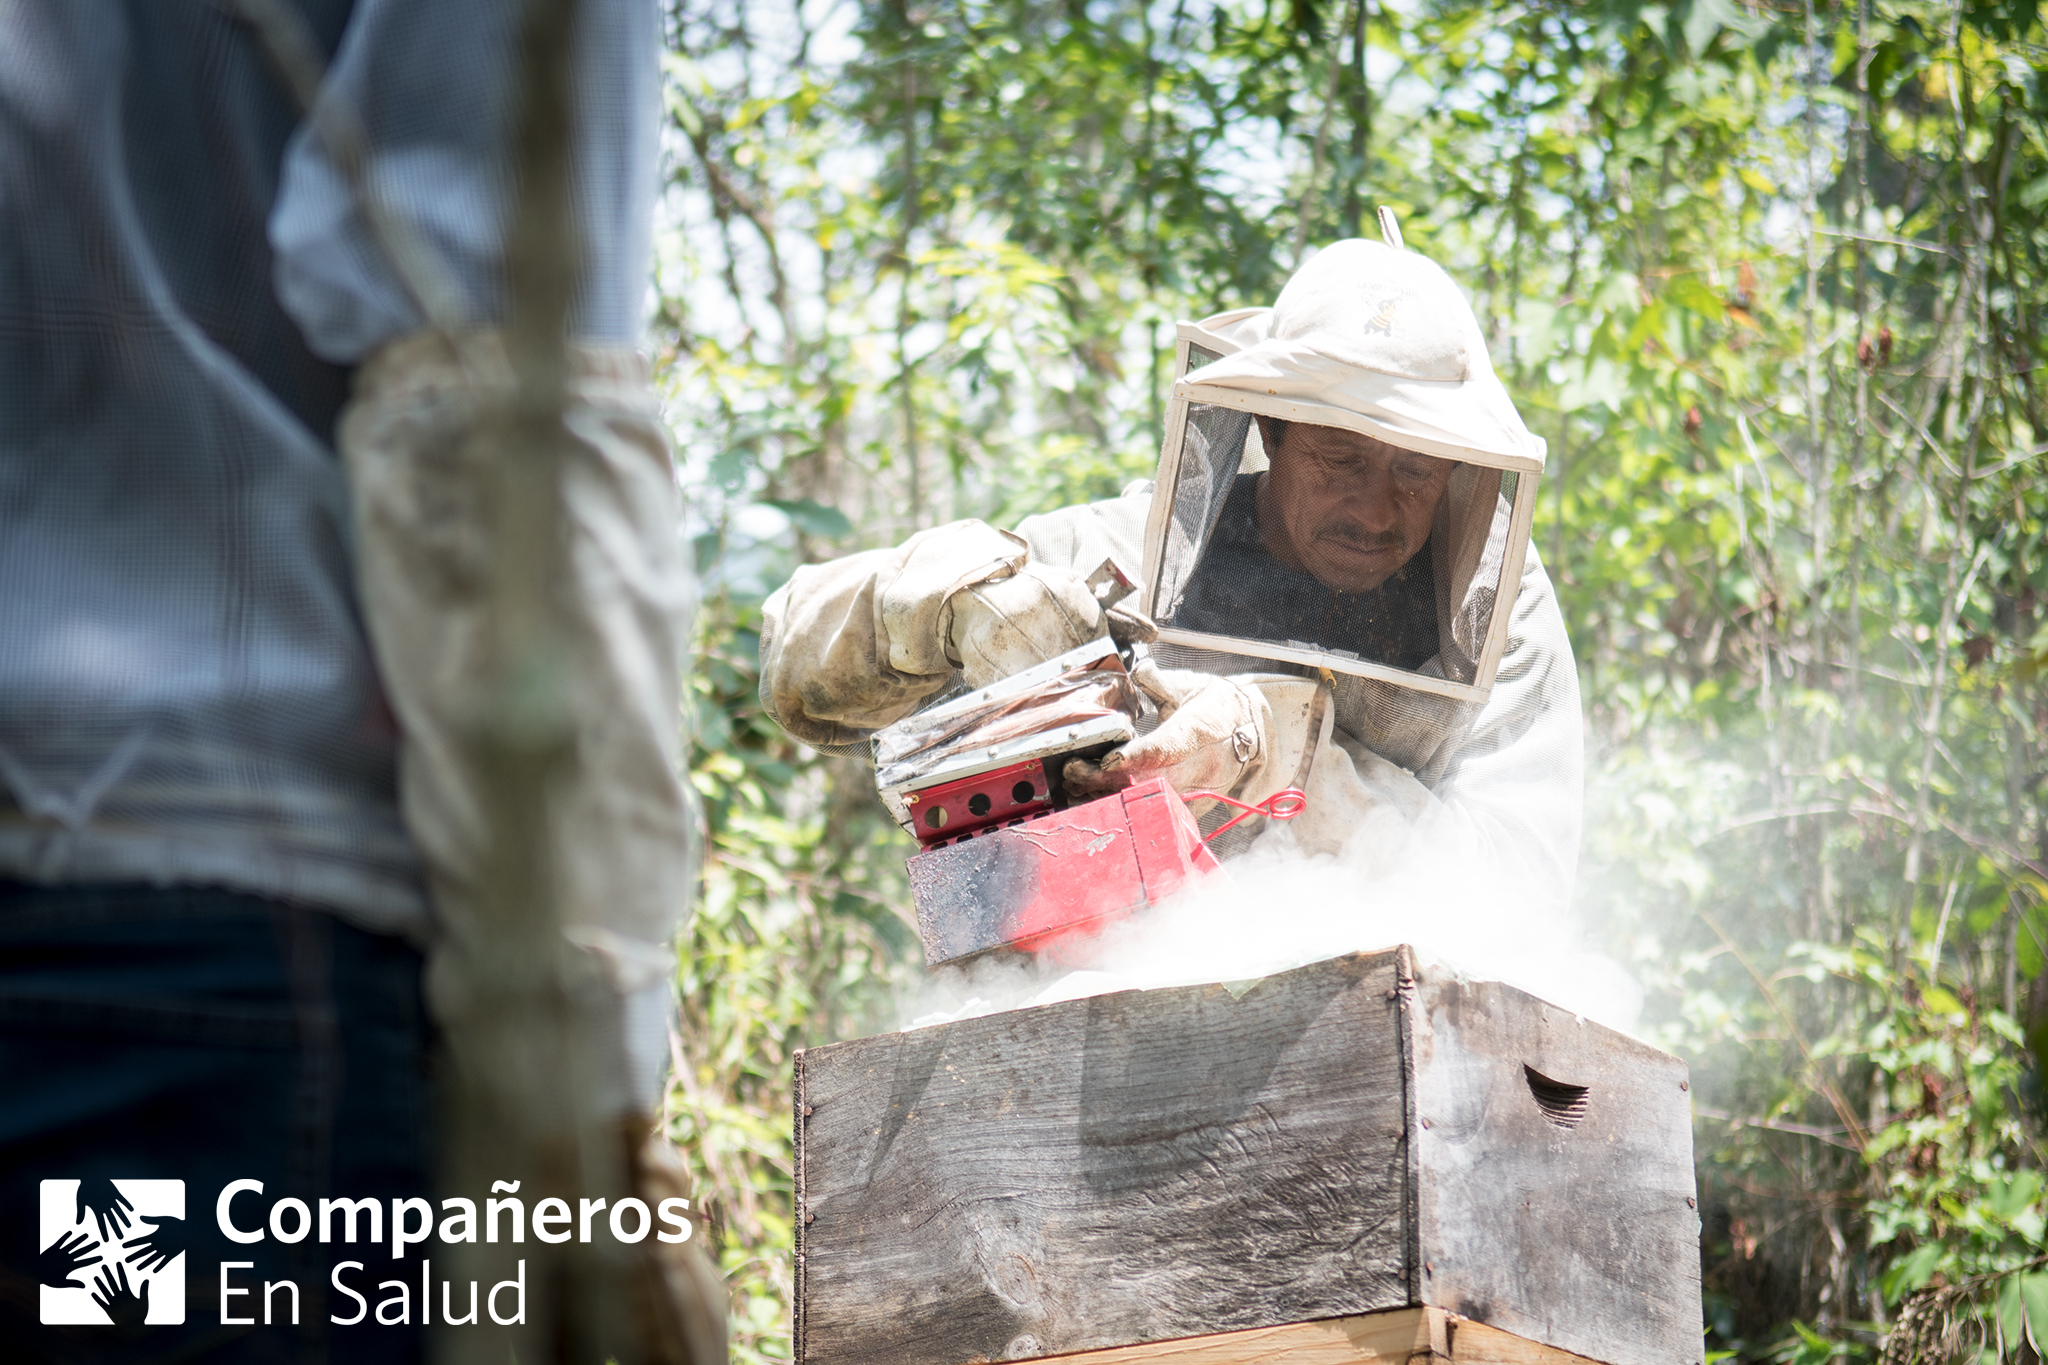  Don Ramiro, uno de los anfitriones de los estudiantes de medicina visitantes, les muestra el proceso de cosechar miel de sus panales cerca de la comunidad de Laguna del Cofre... 